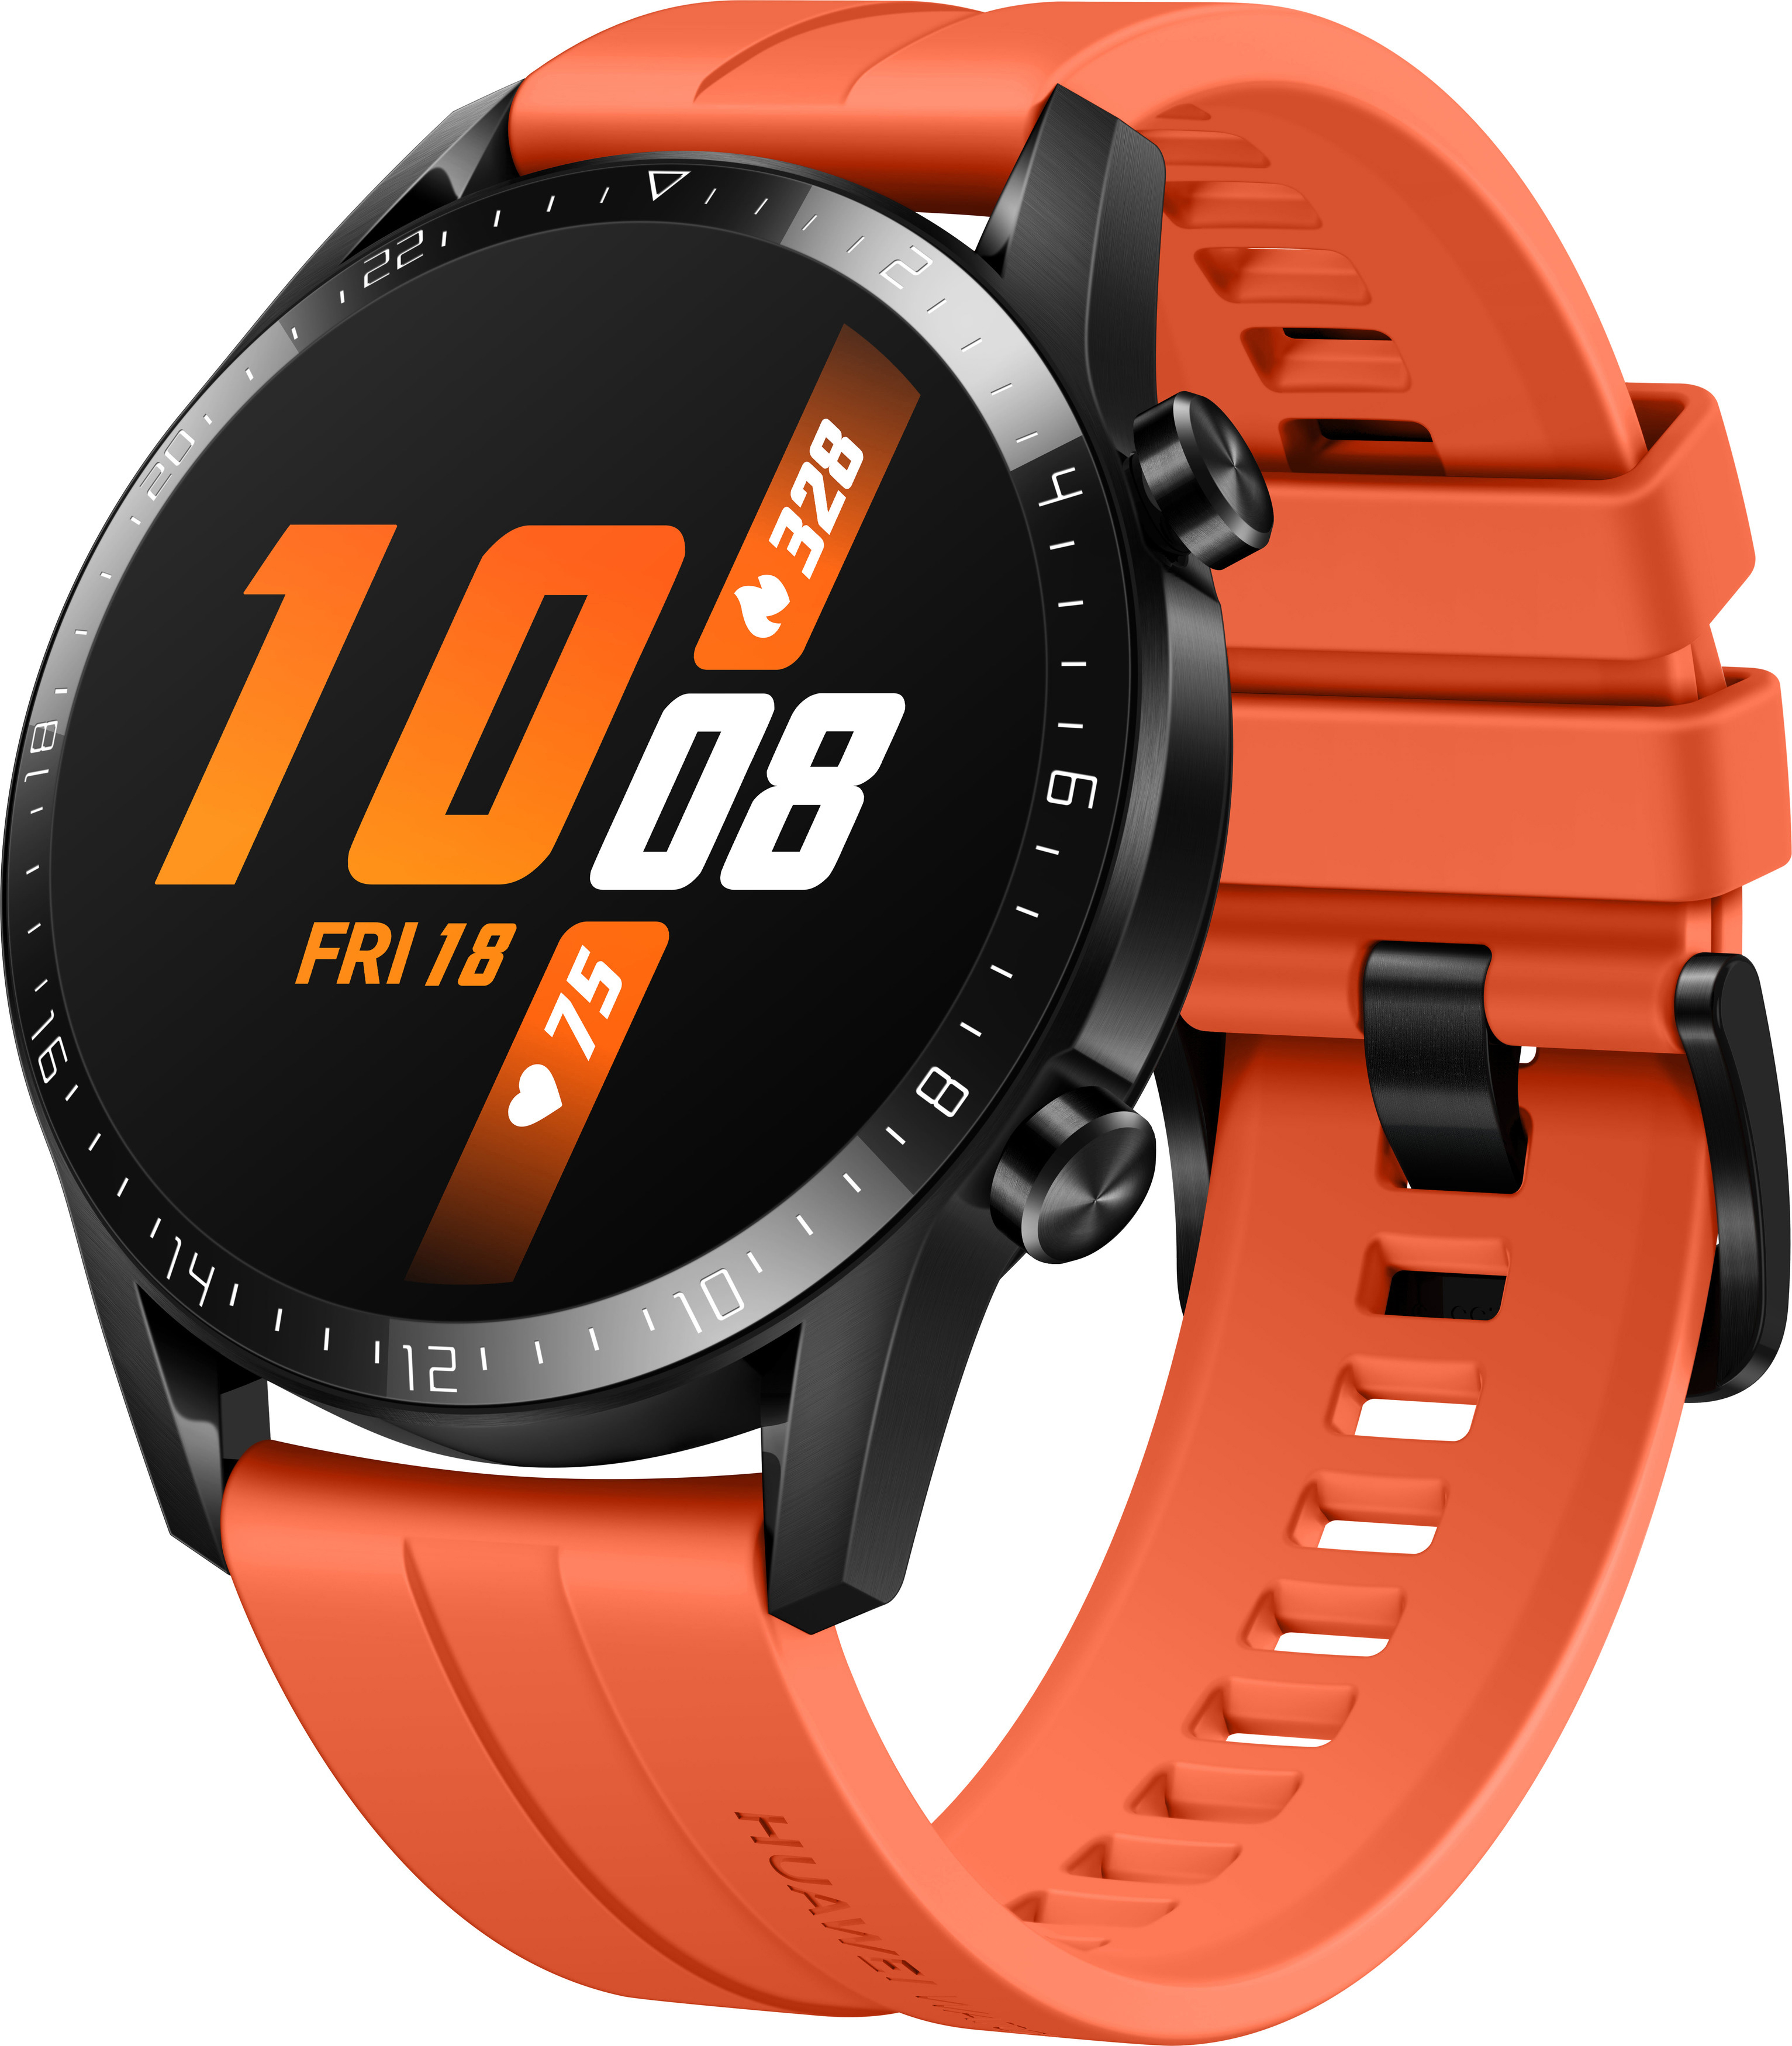 140-210 Fluorkautschuk, GT Orange Smartwatch HUAWEI 2 mm, Sunset 46mm Watch